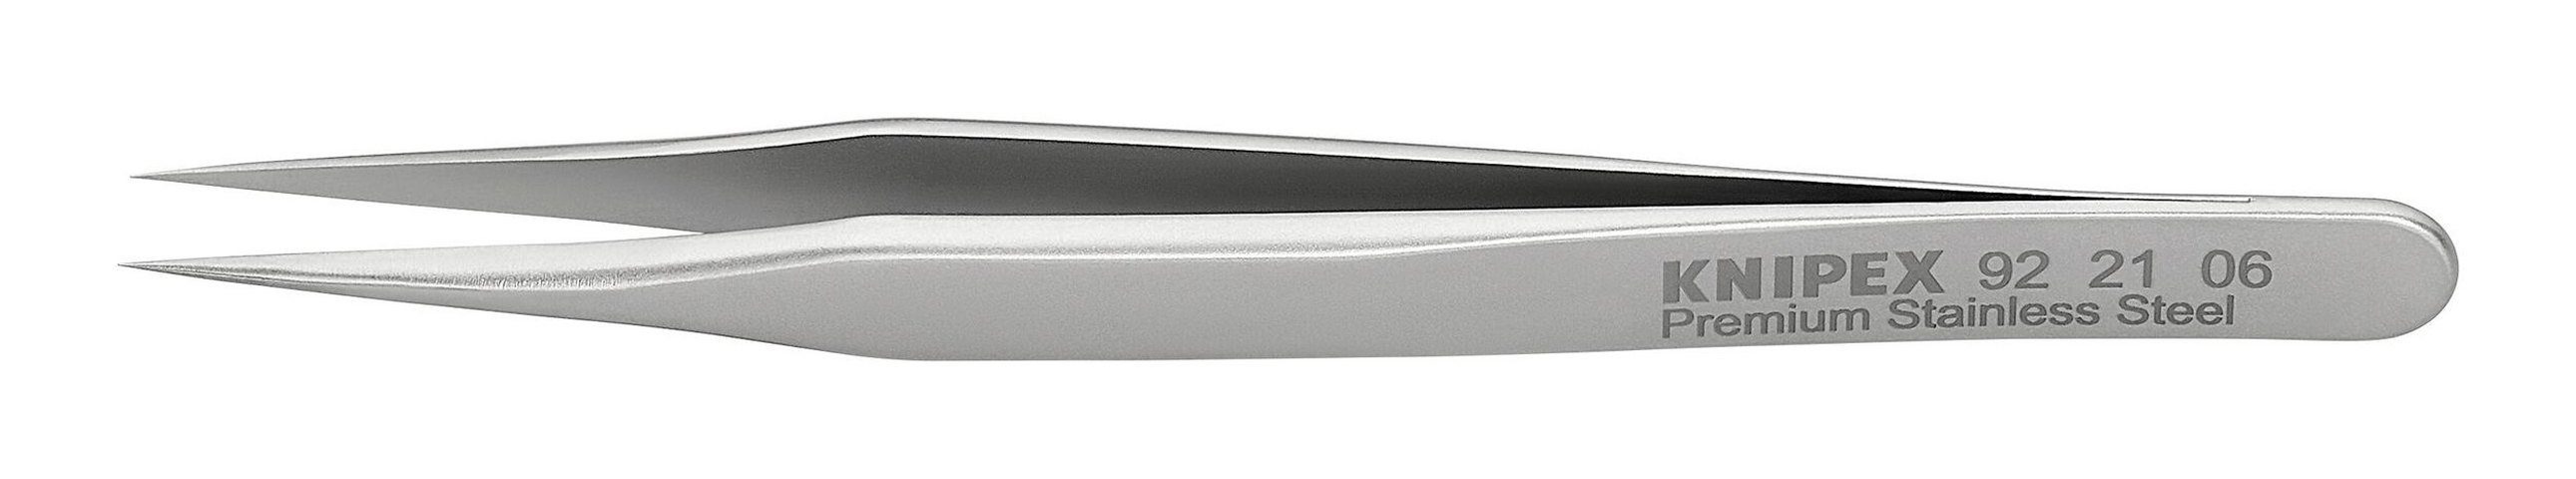 [Inländisches reguläres Produkt] Knipex Pinzette, Minipräzisionspinzette Edelstahl 21 92 06